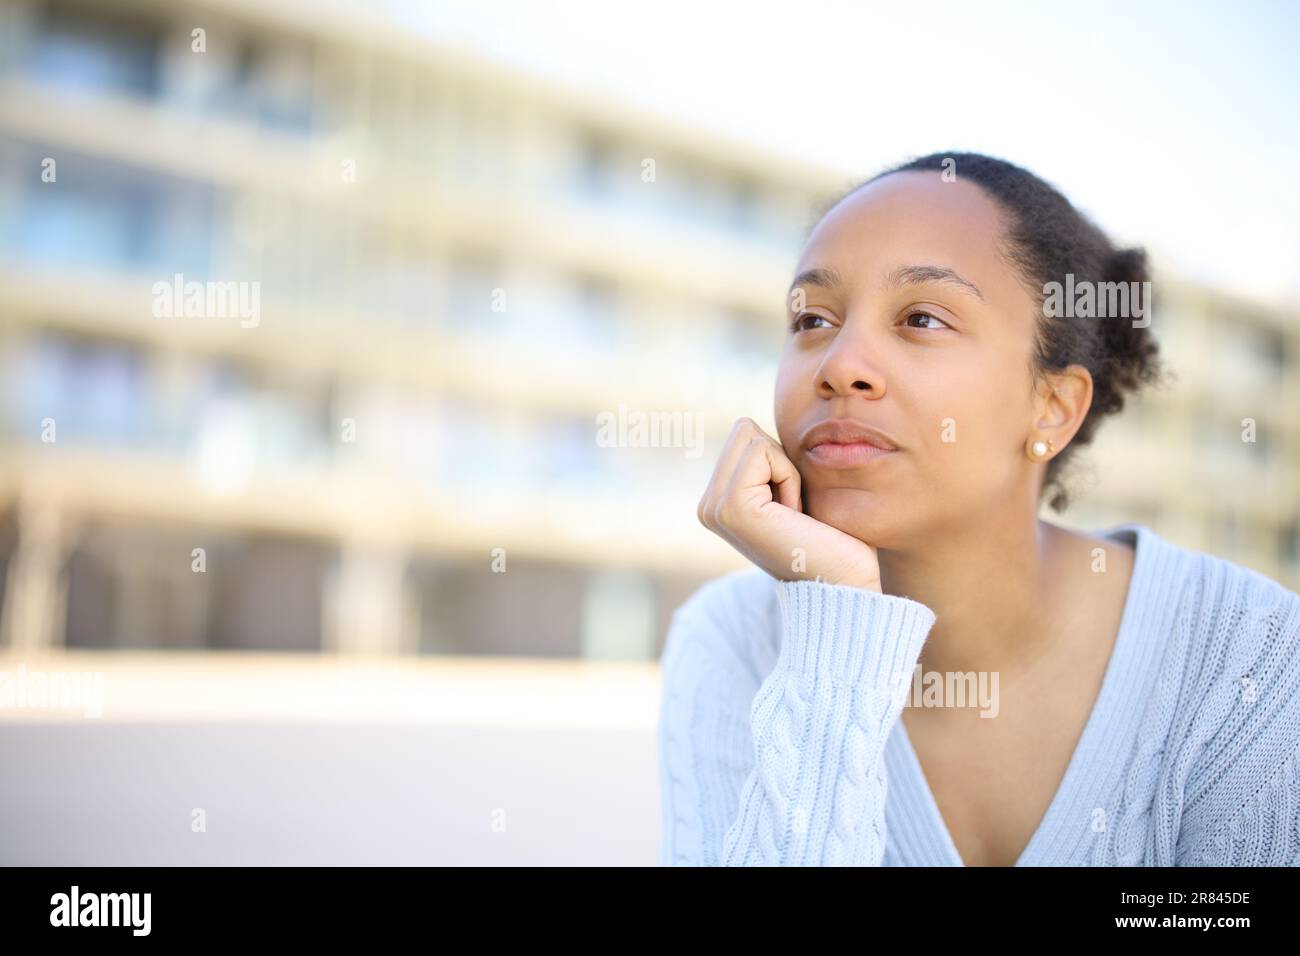 Une femme noire qui pense regarder loin dans la rue Banque D'Images